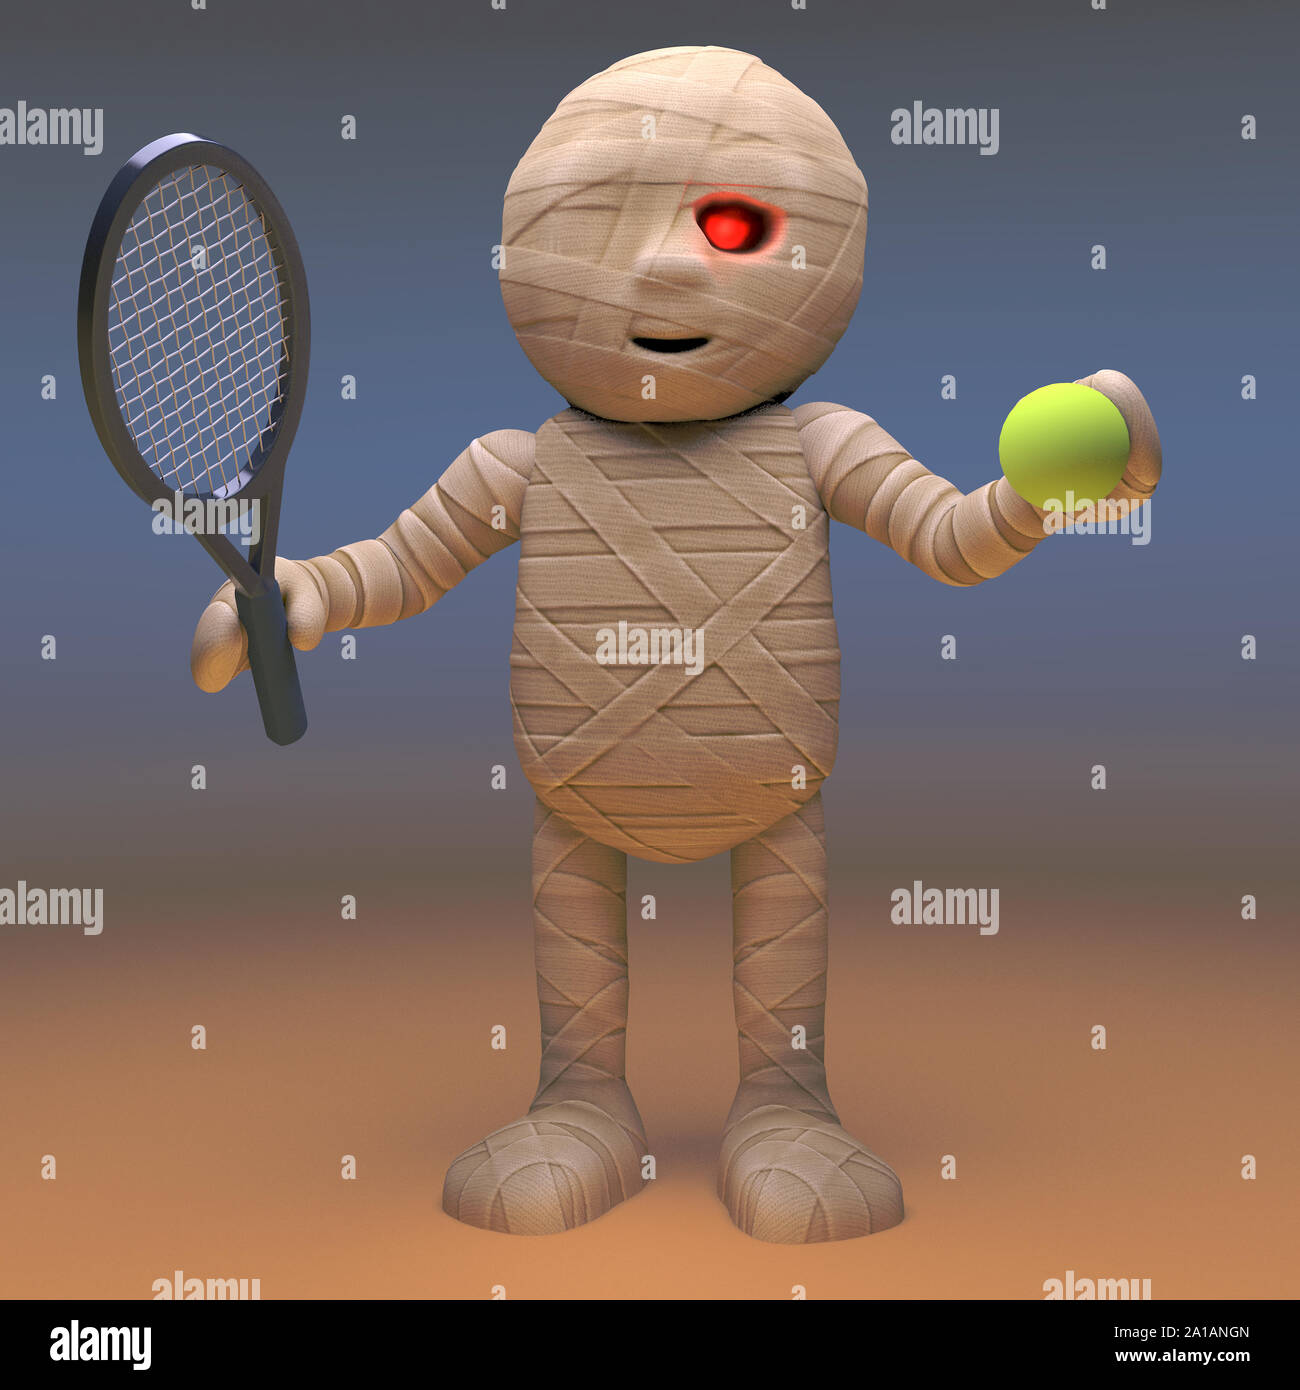 Attenti alla salute mummia egiziana monster gioca tennis per mantenersi in forma, 3D render illustrazione Foto Stock